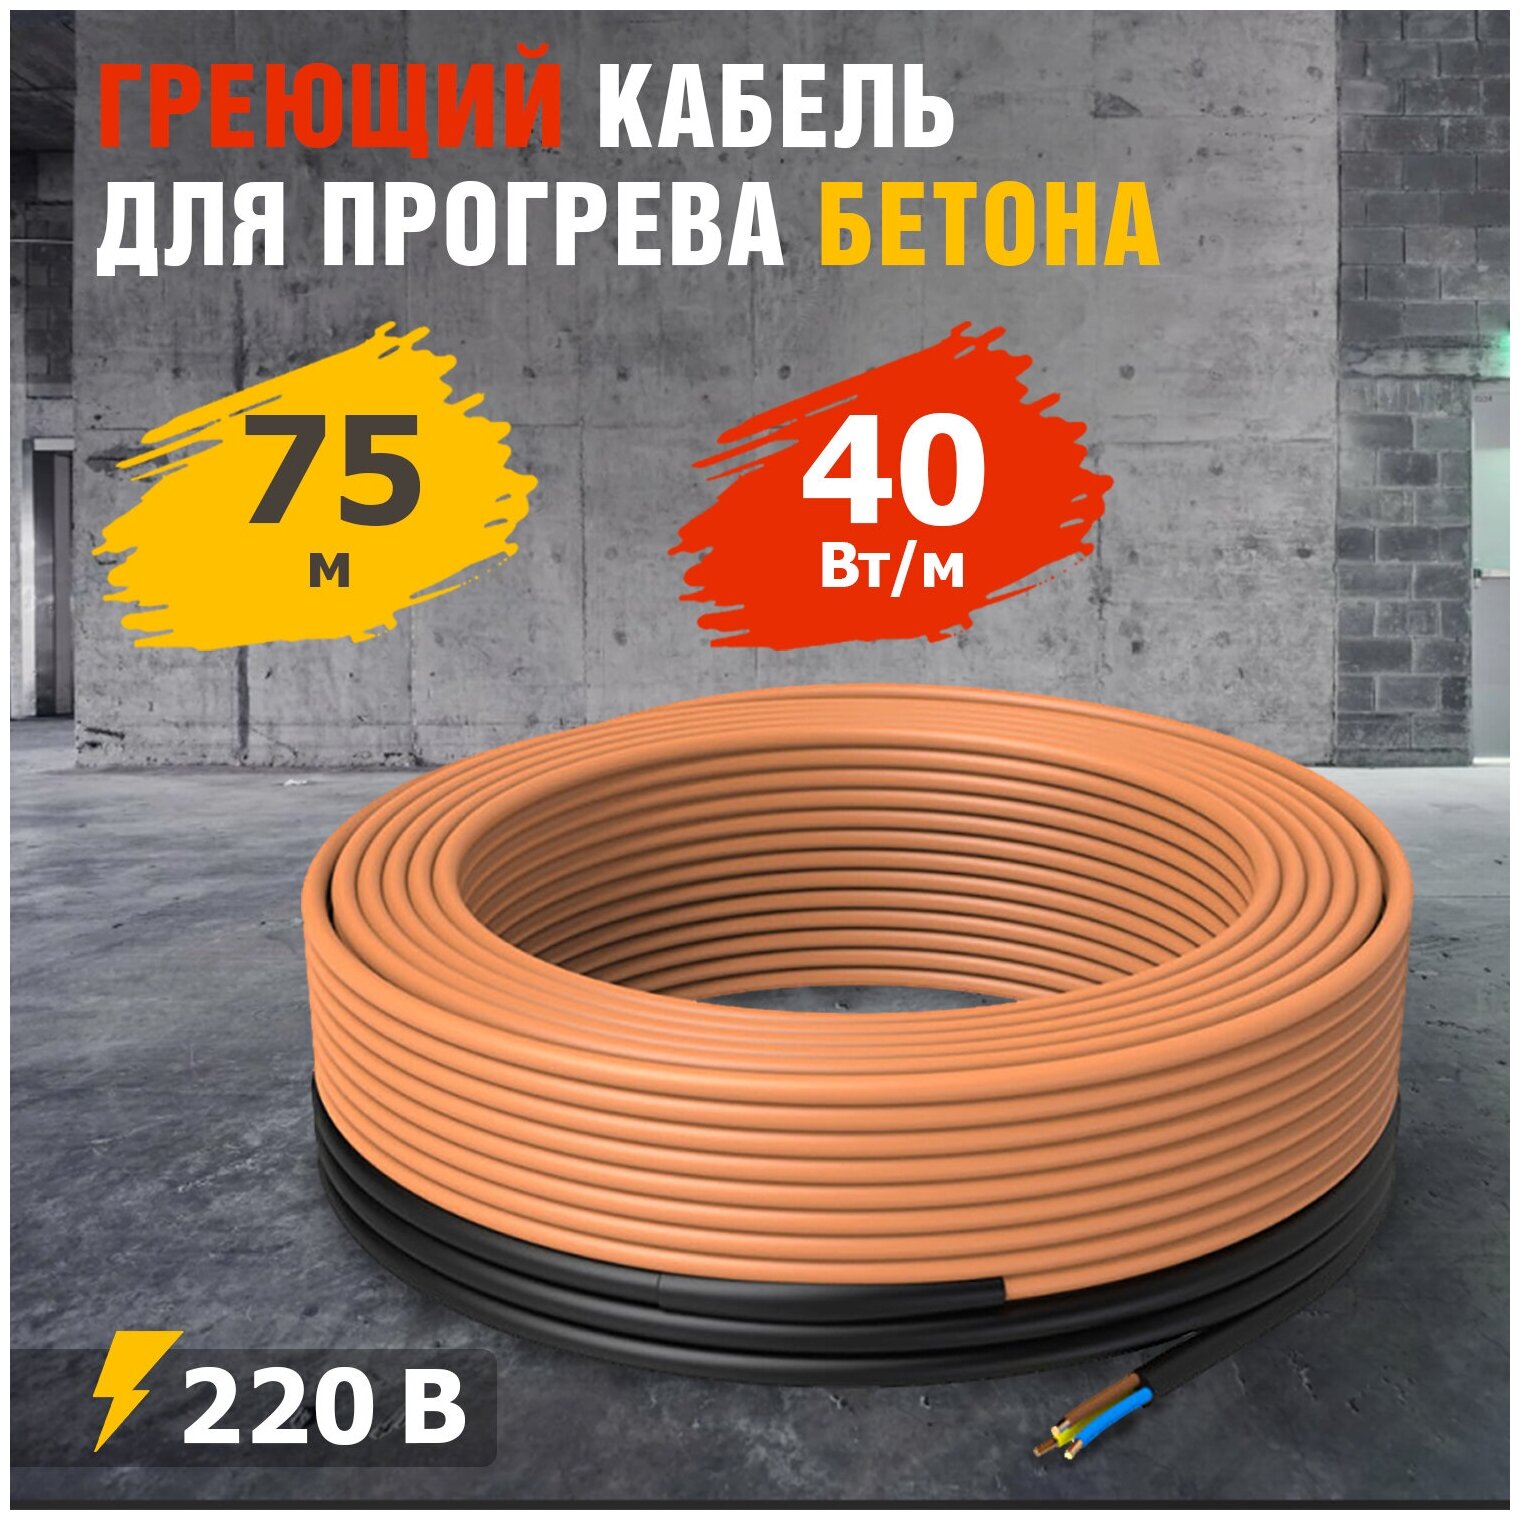 Греющий кабель для прогрева бетона кдбс 40 Вт/м 75 м REXANT